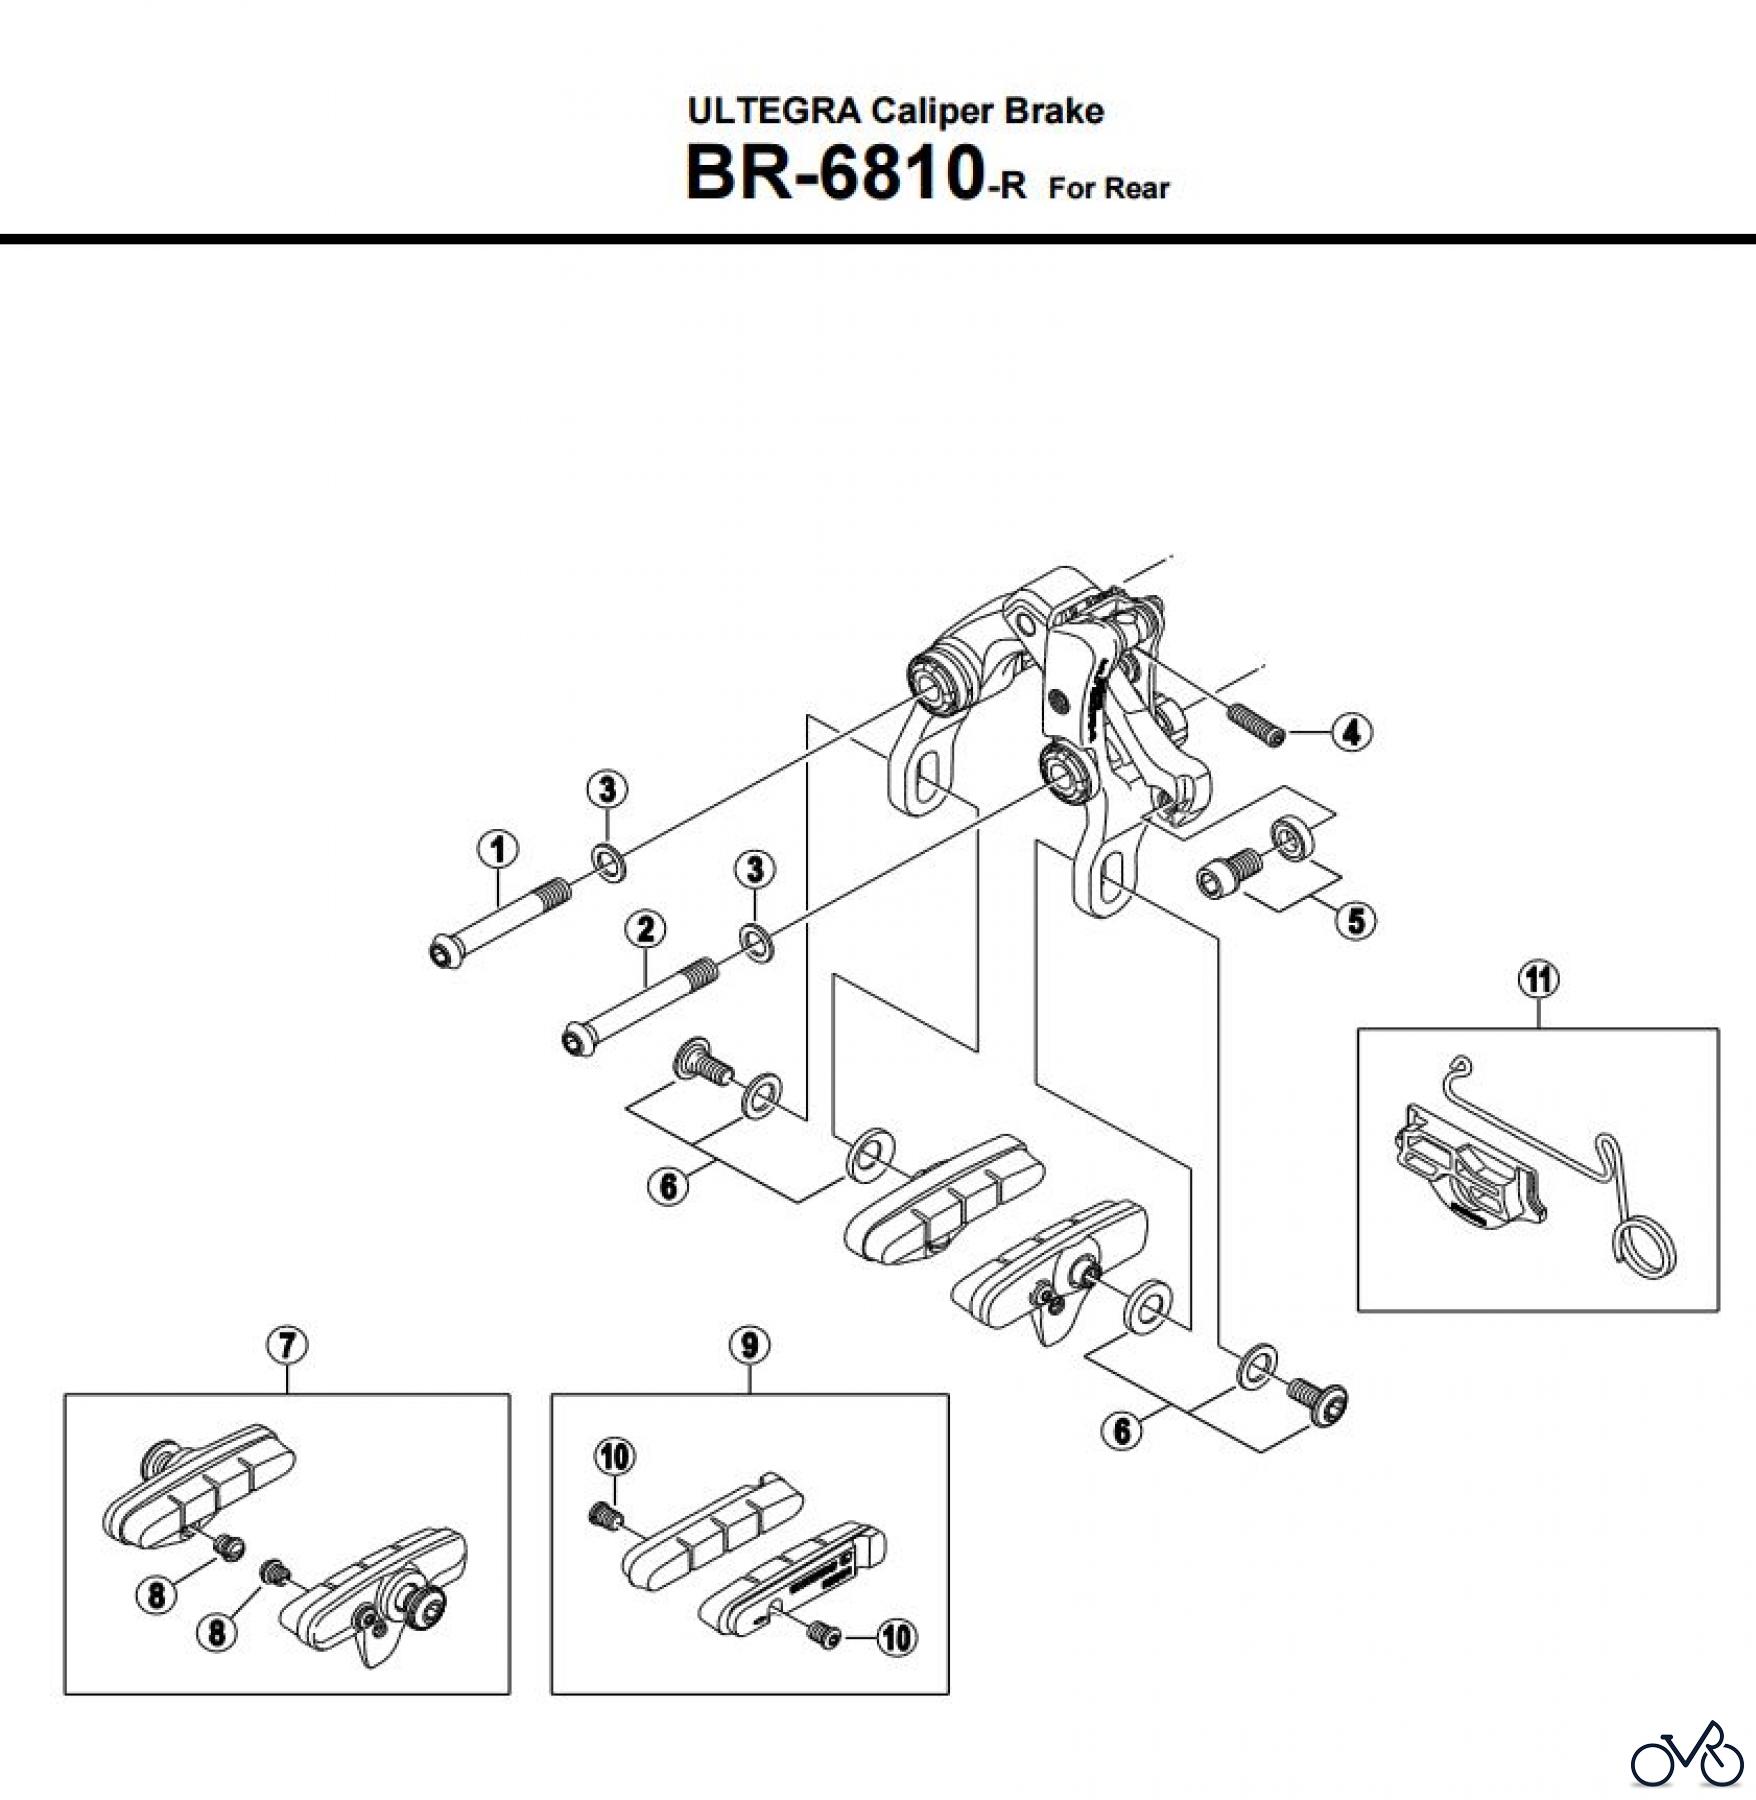  Shimano BR Brake - Bremse BR-6810-R -3601A ULTEGRA Caliper Brake